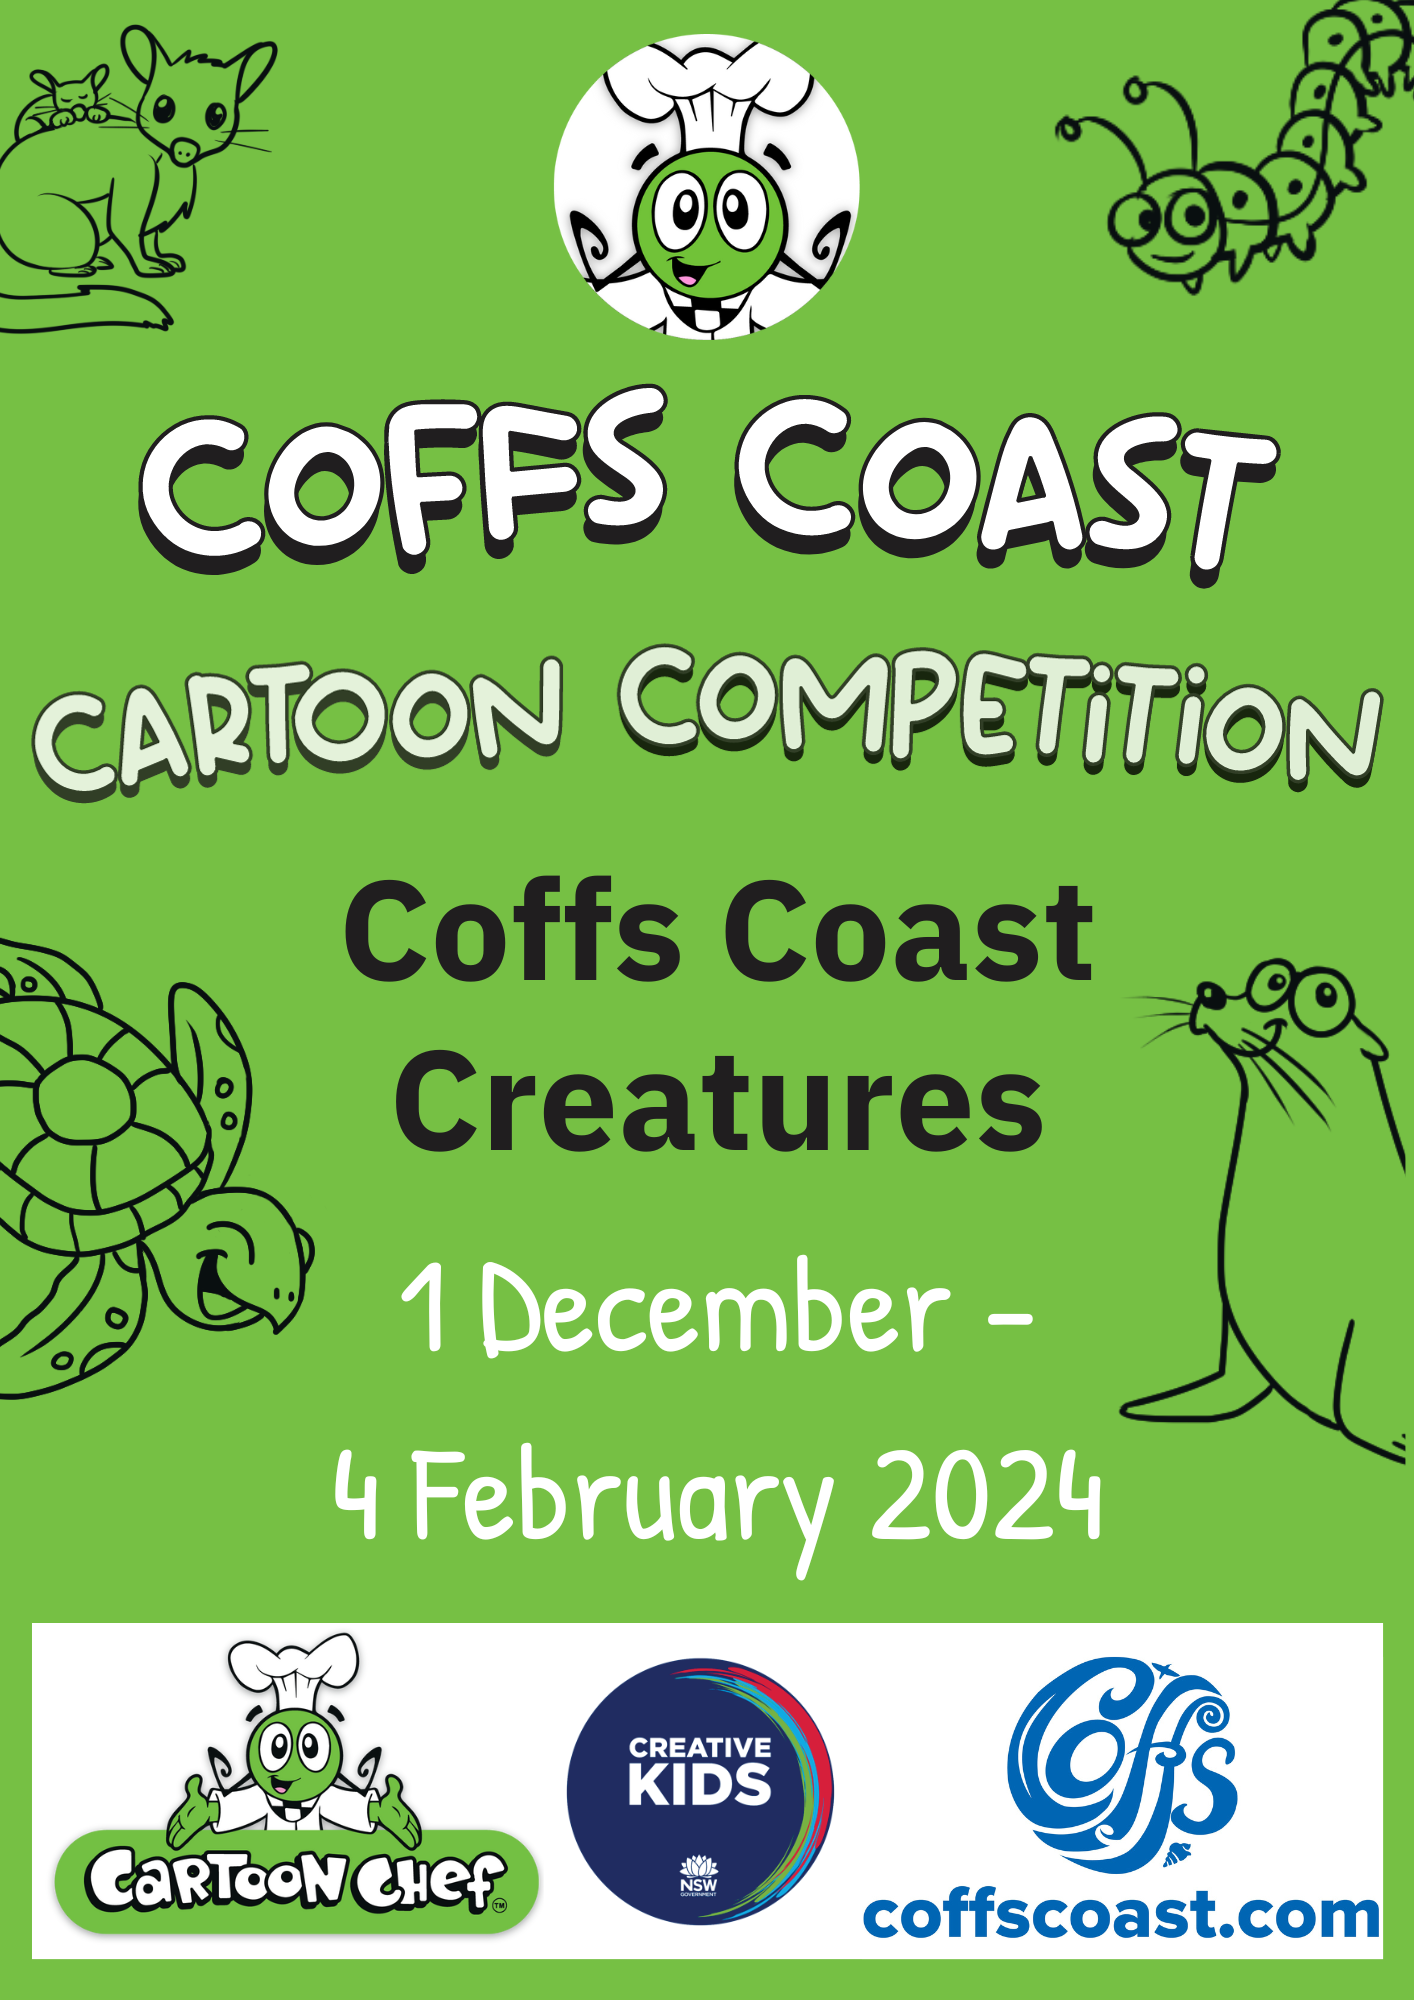 Coffs coast creatures